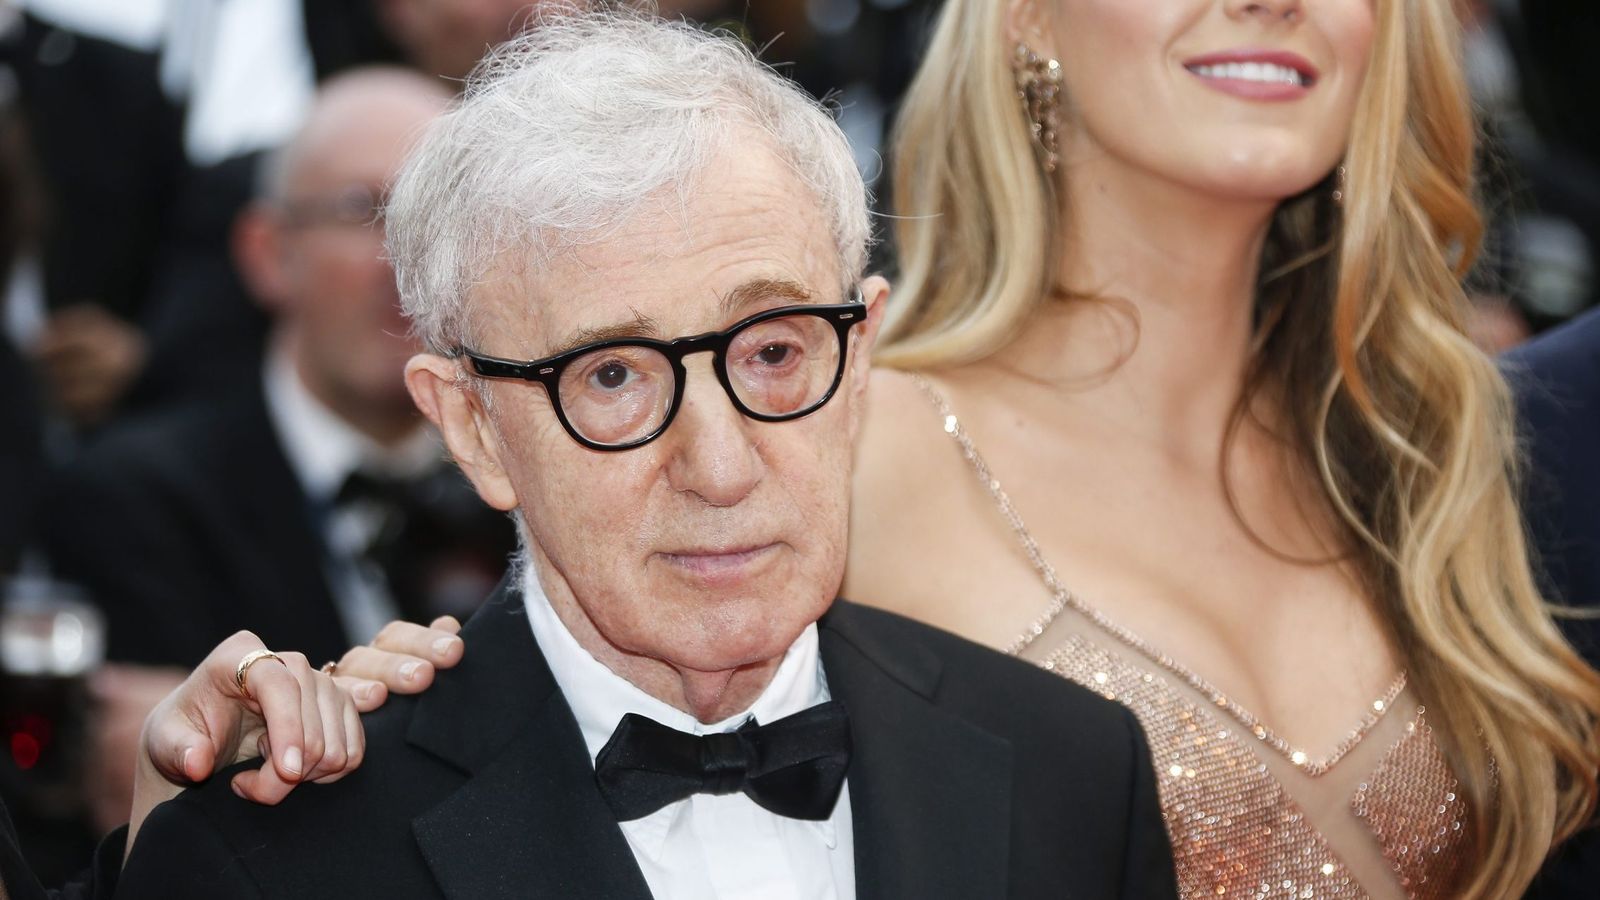 Foto: Woody Allen durante la presentación de la película "Café society" en Cannes. Foto: Julien Warnand/Efe